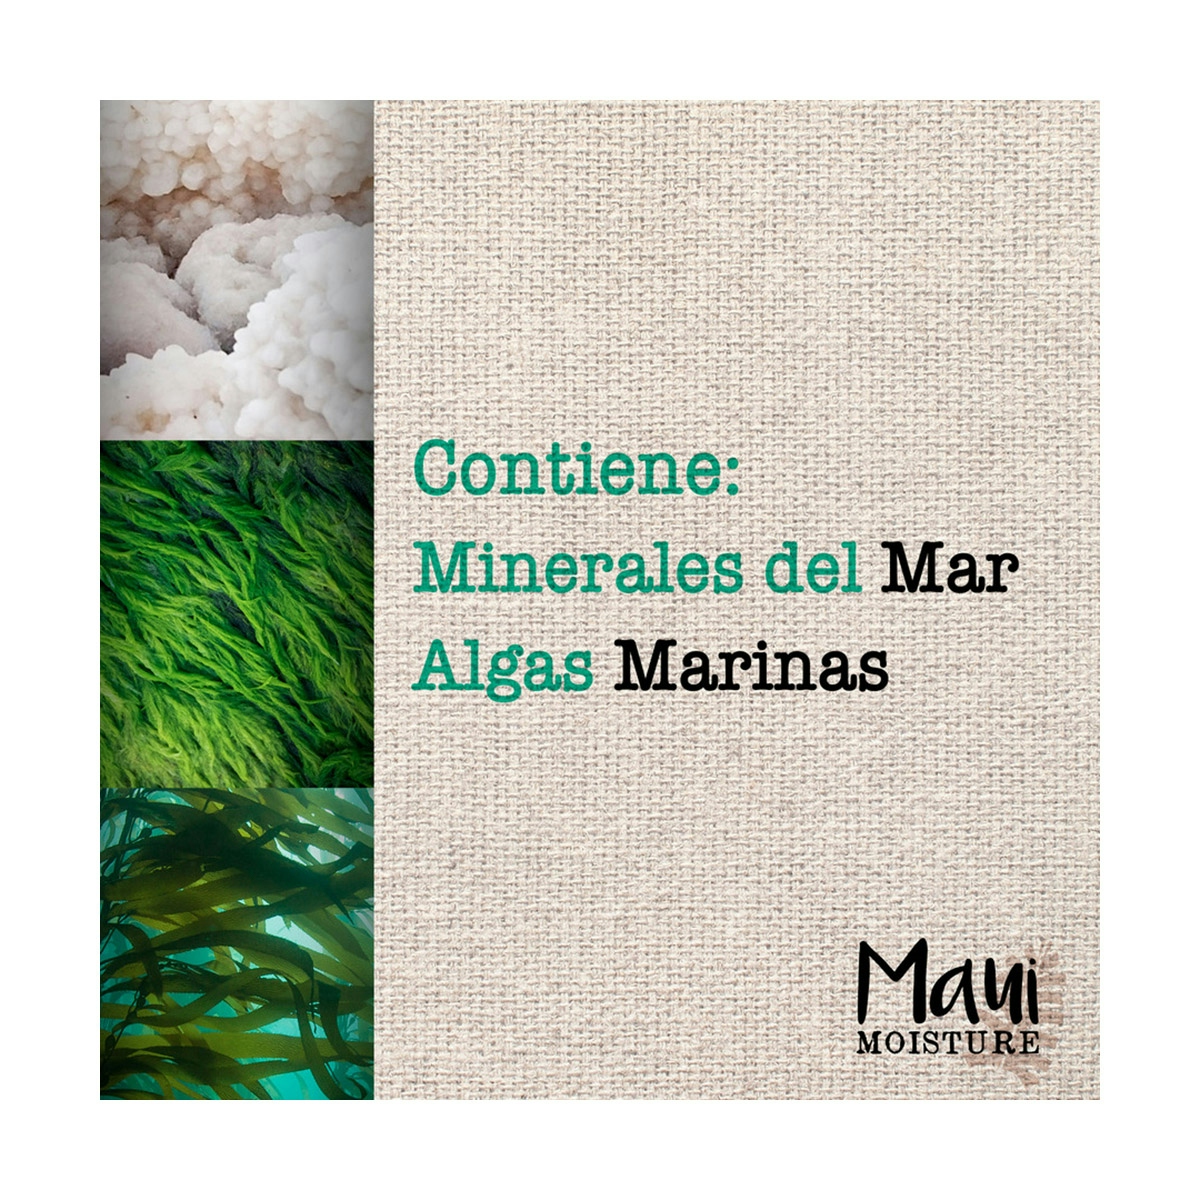  Moisture, Champú Protección del Color y Minerales Marinos, pelo Teñido, 385 ml